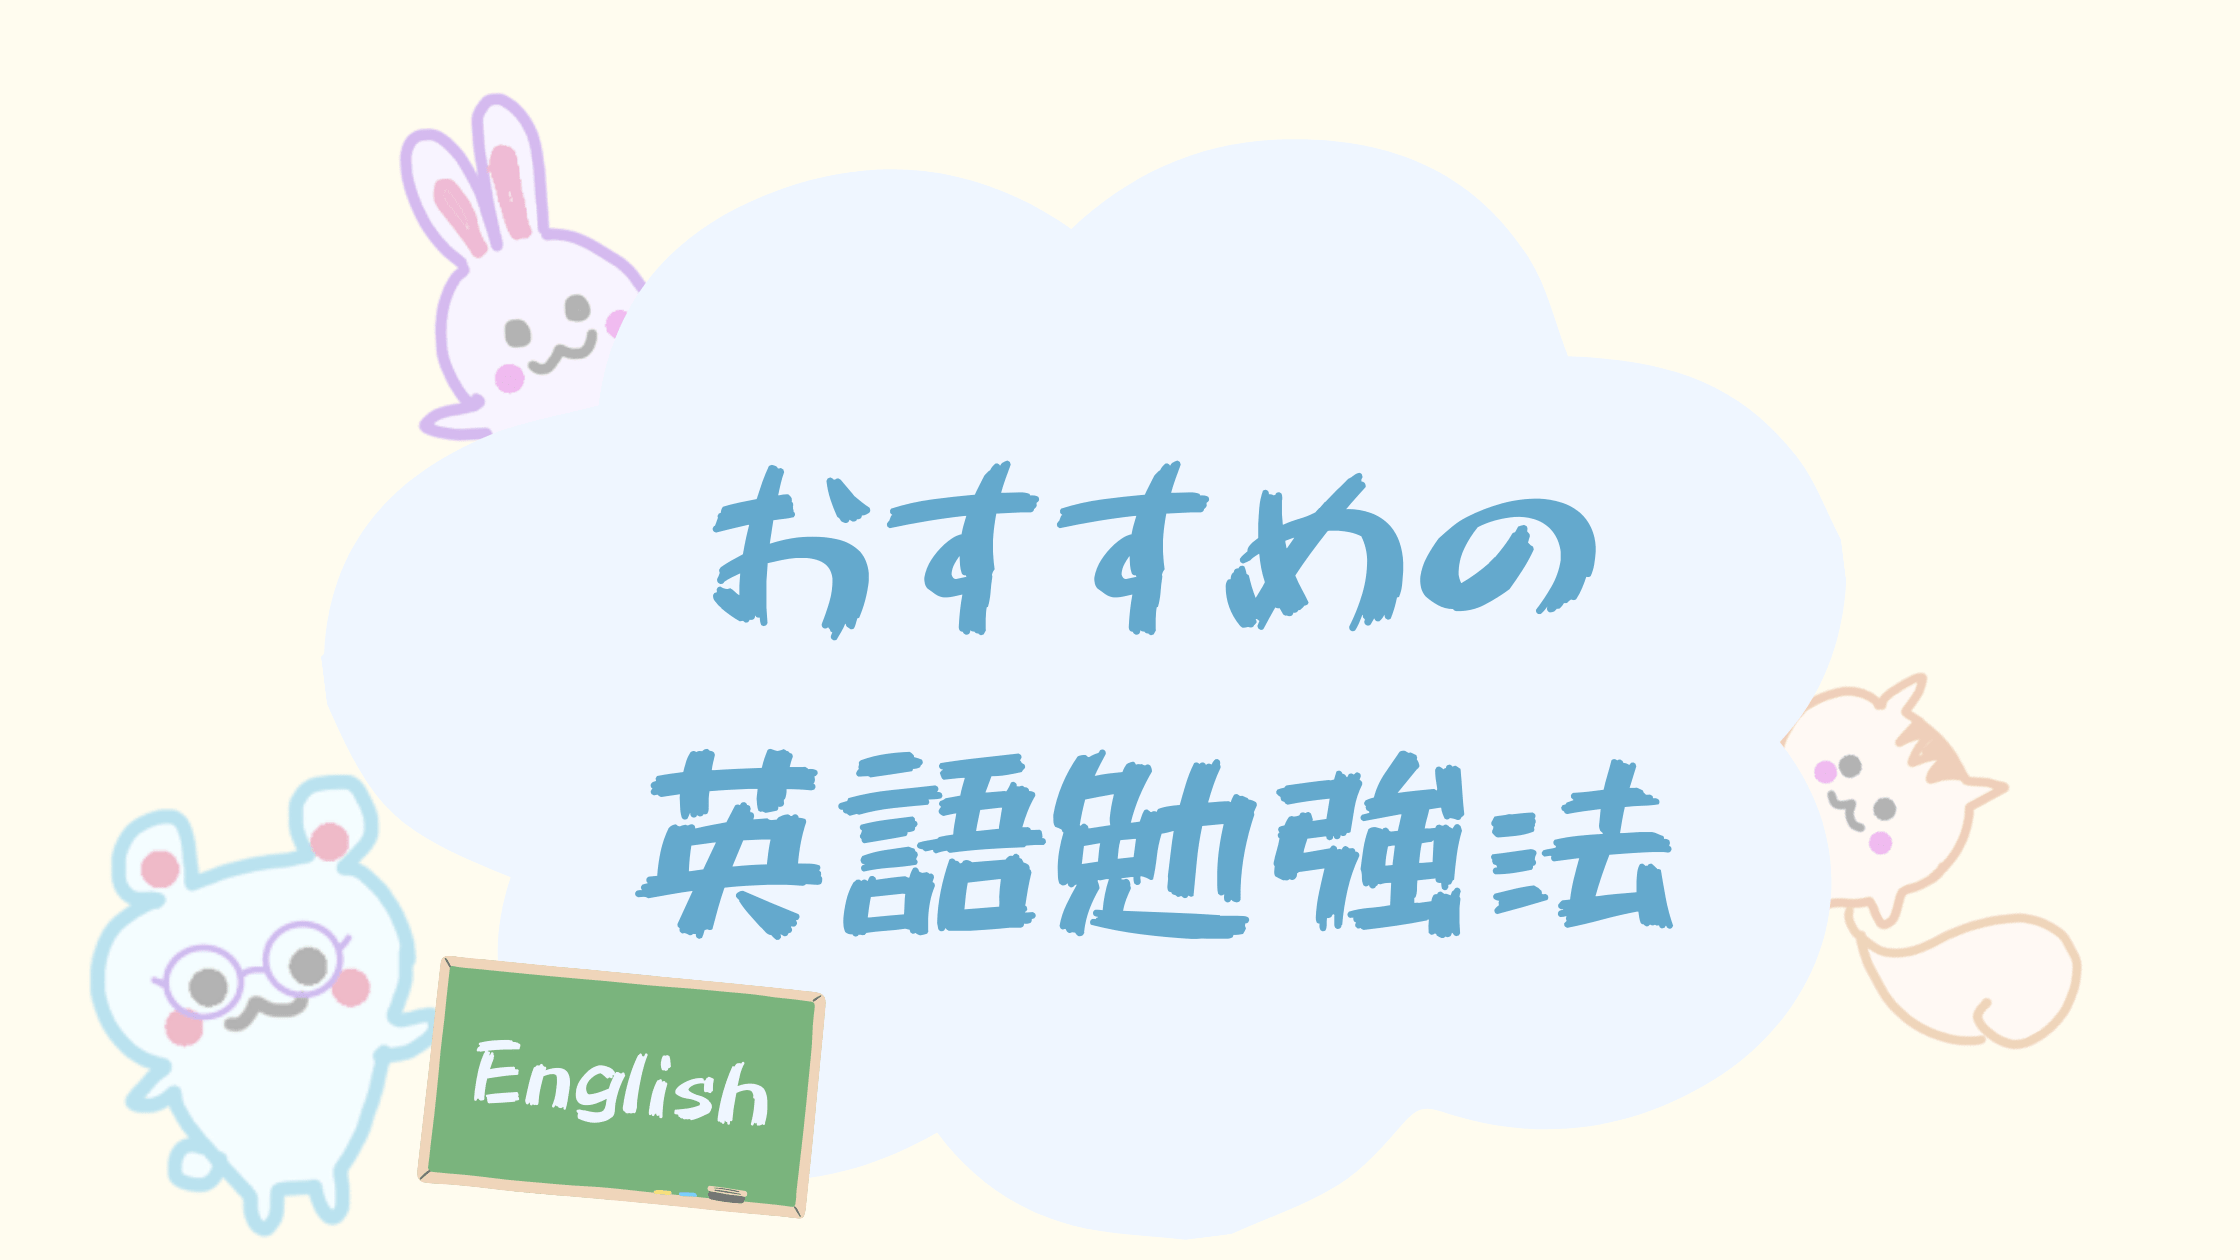 おすすめの英語勉強法 くま先生による解説 Happy Chit Chat 英会話初心者の英語学習を応援するサイト